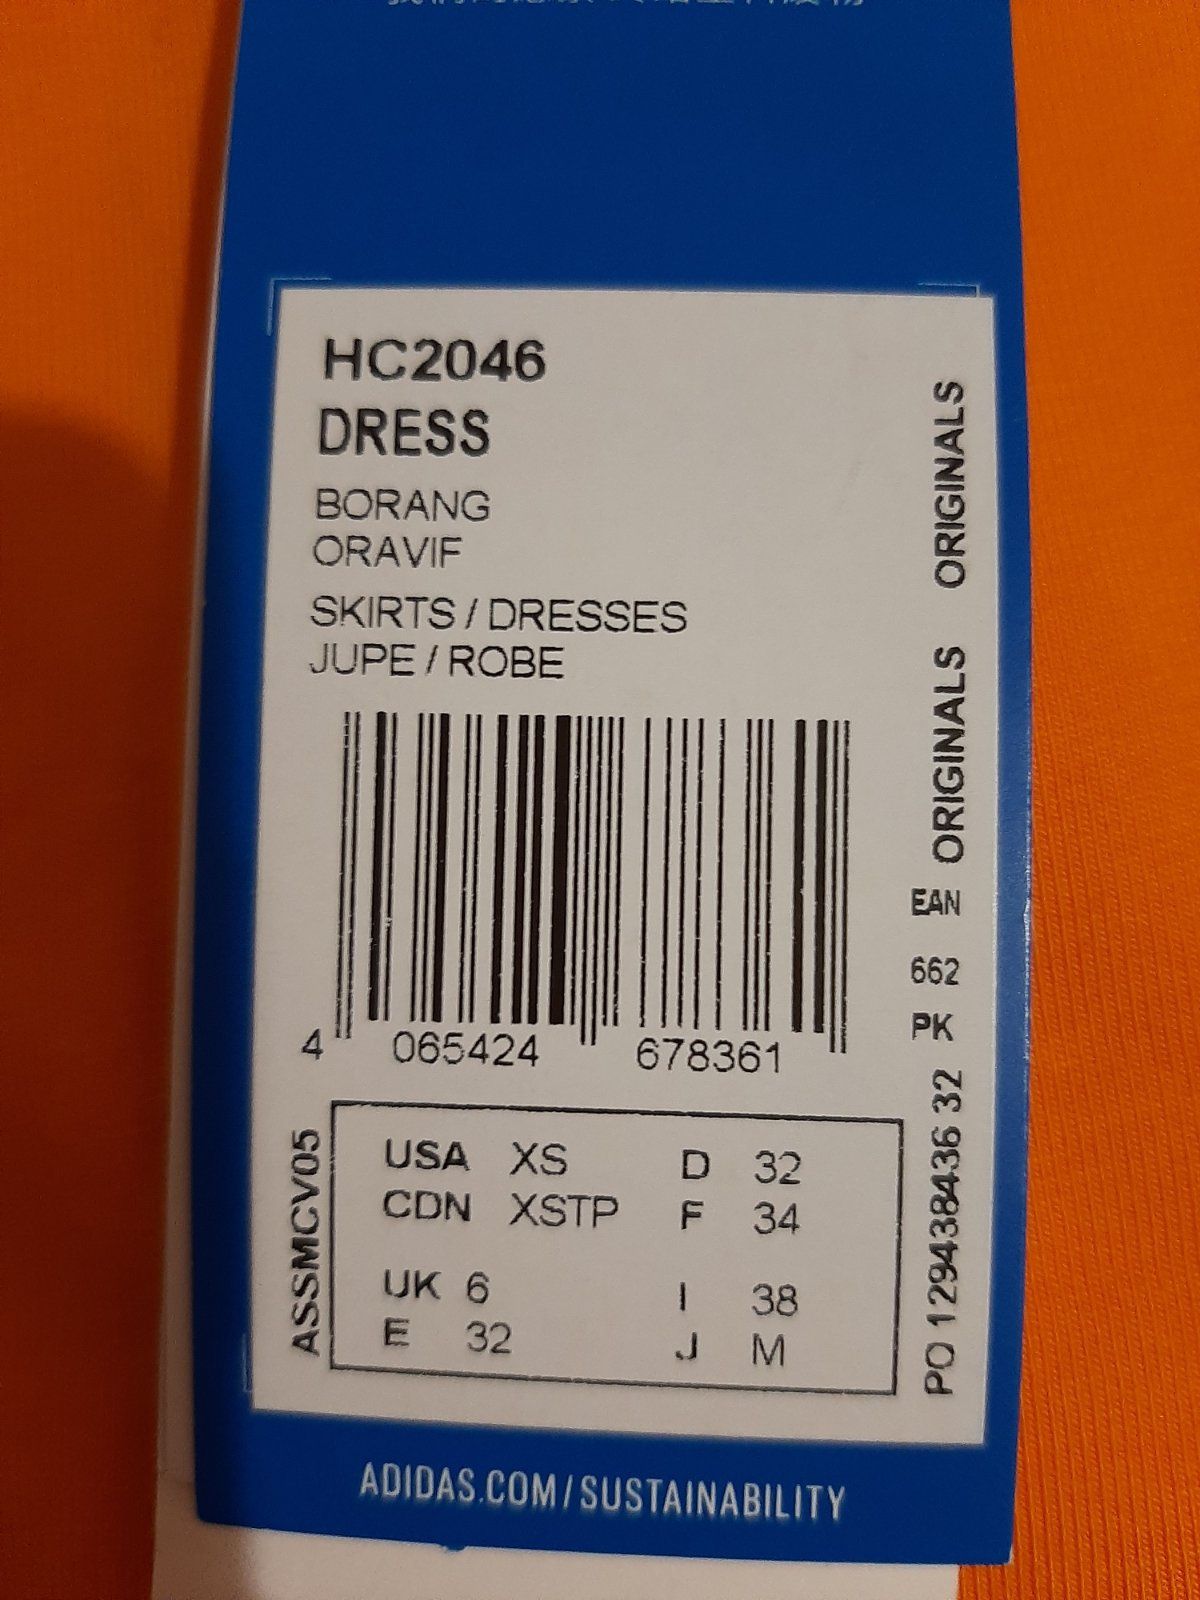 Оранжева рокля Adidas